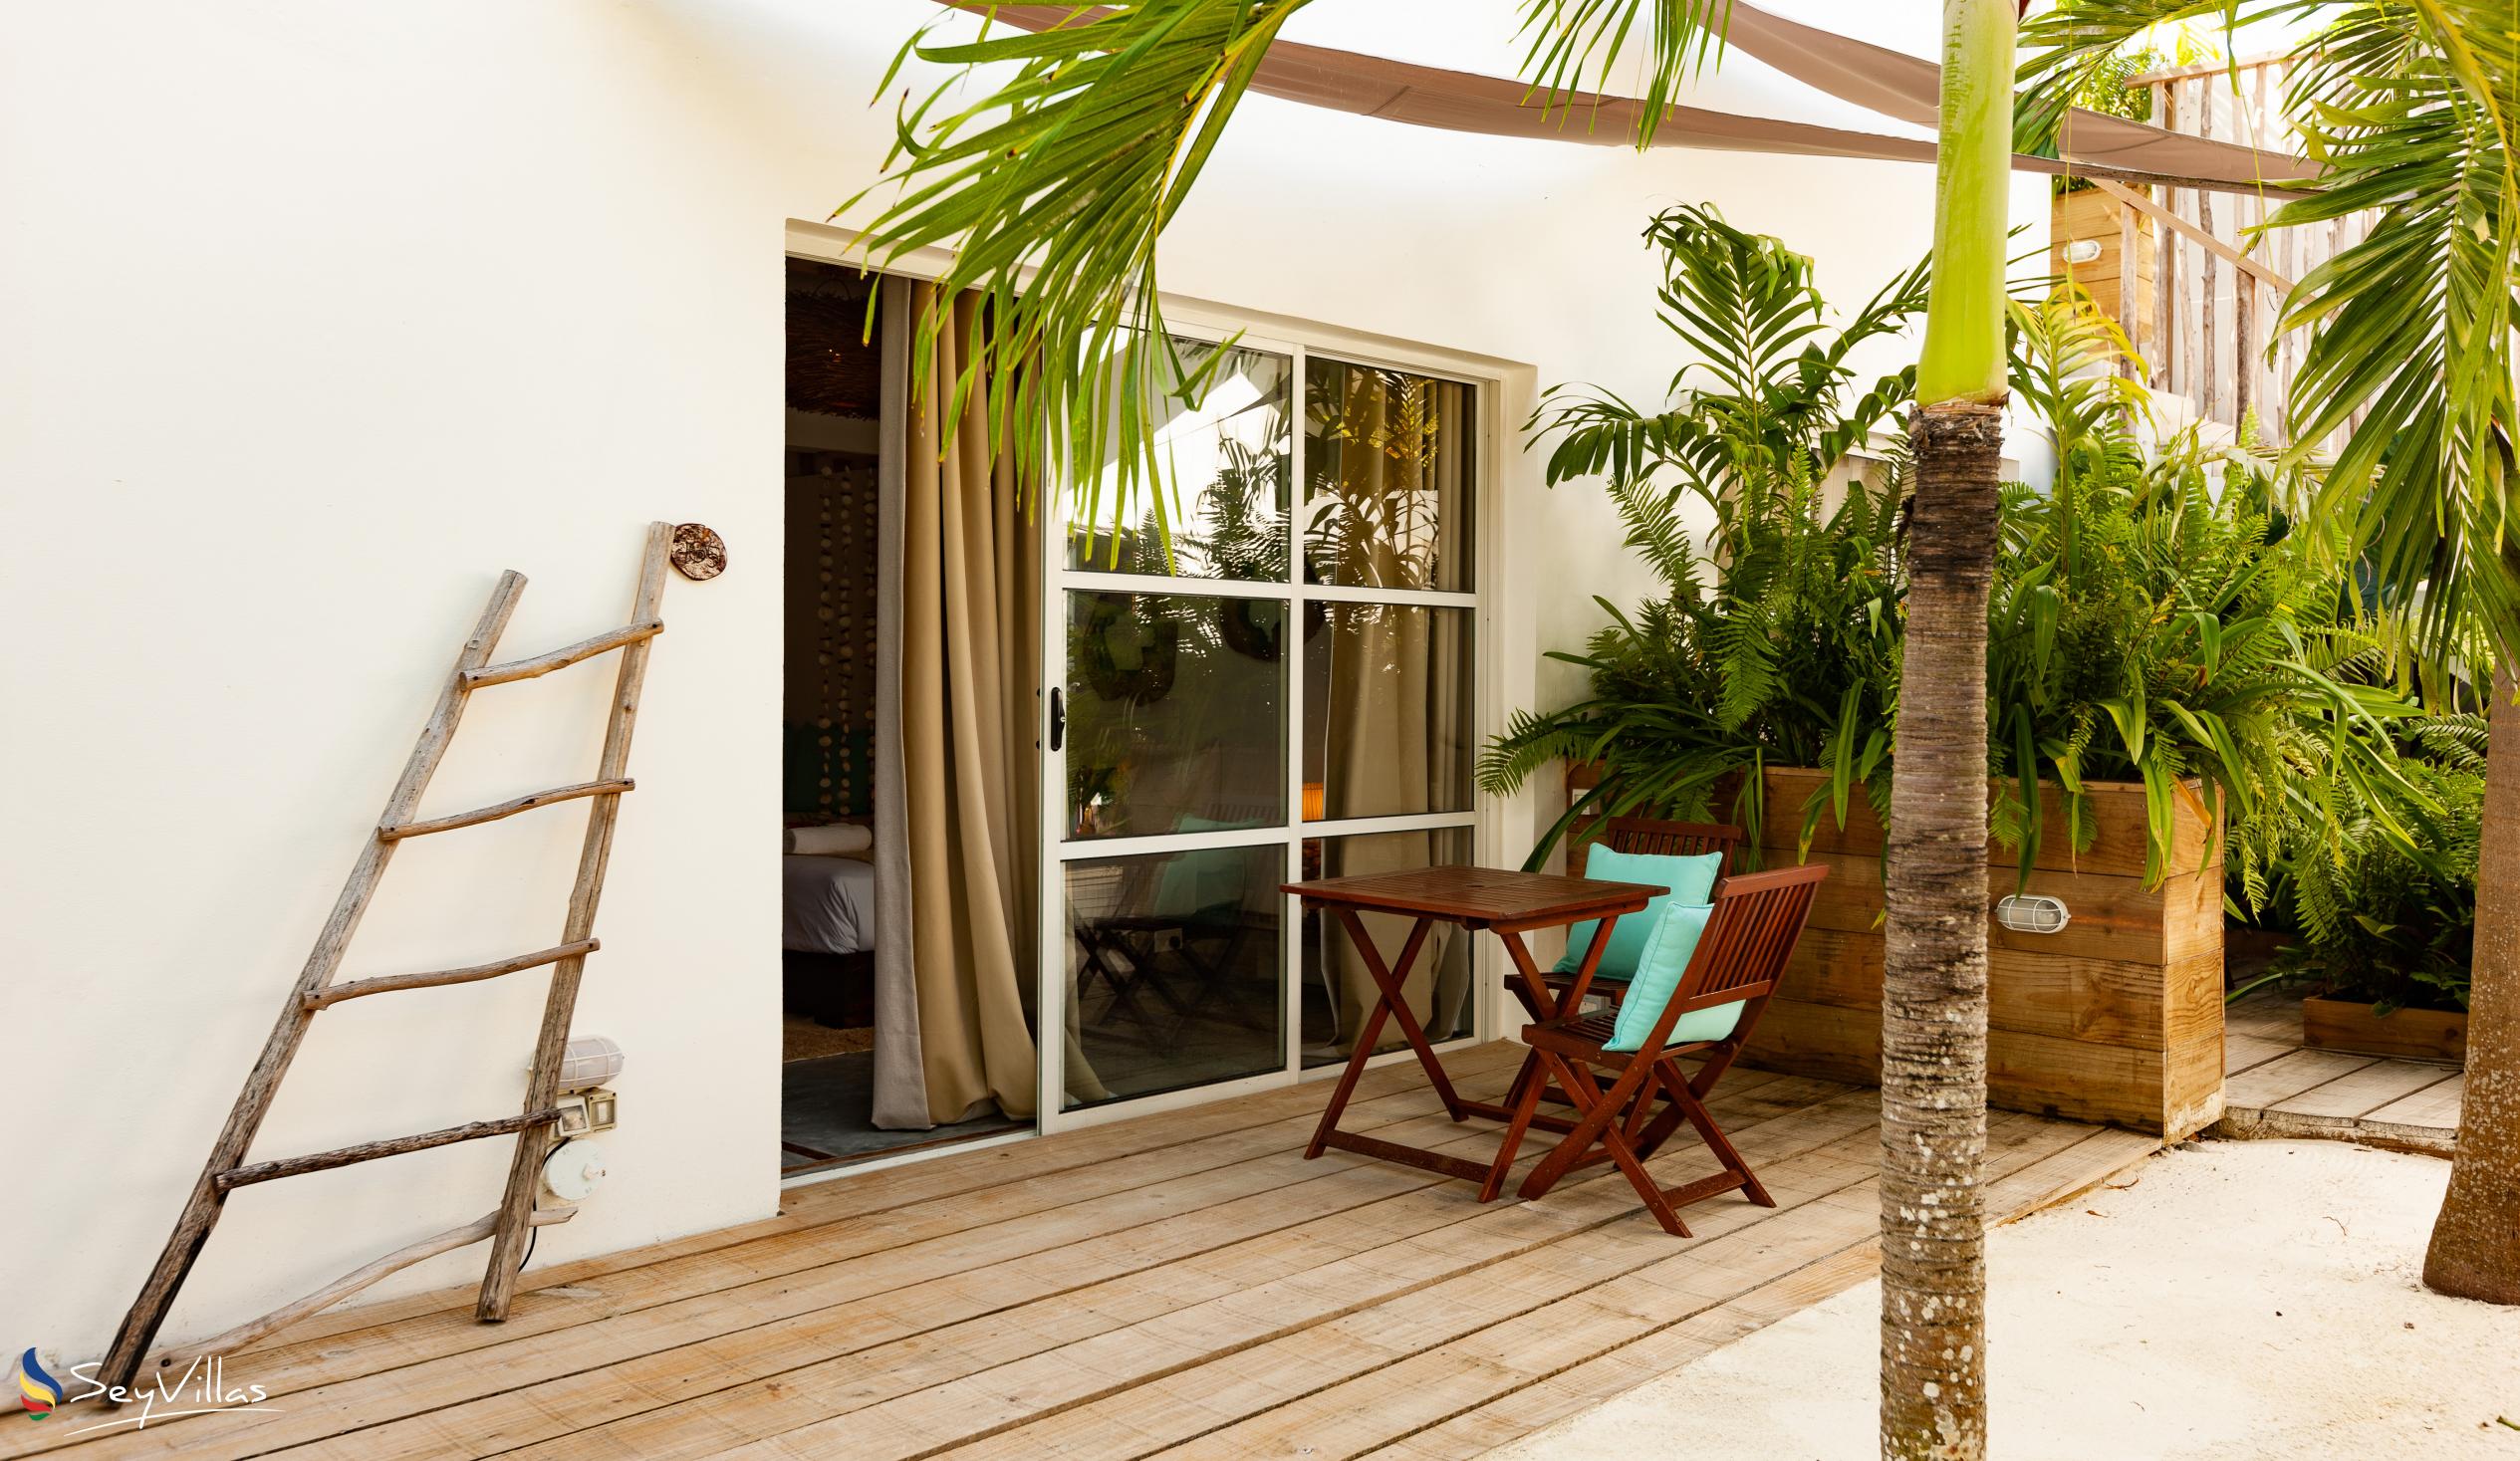 Foto 91: Bliss Hotel Praslin - Beach House - Chambre Beach Garden - Praslin (Seychelles)